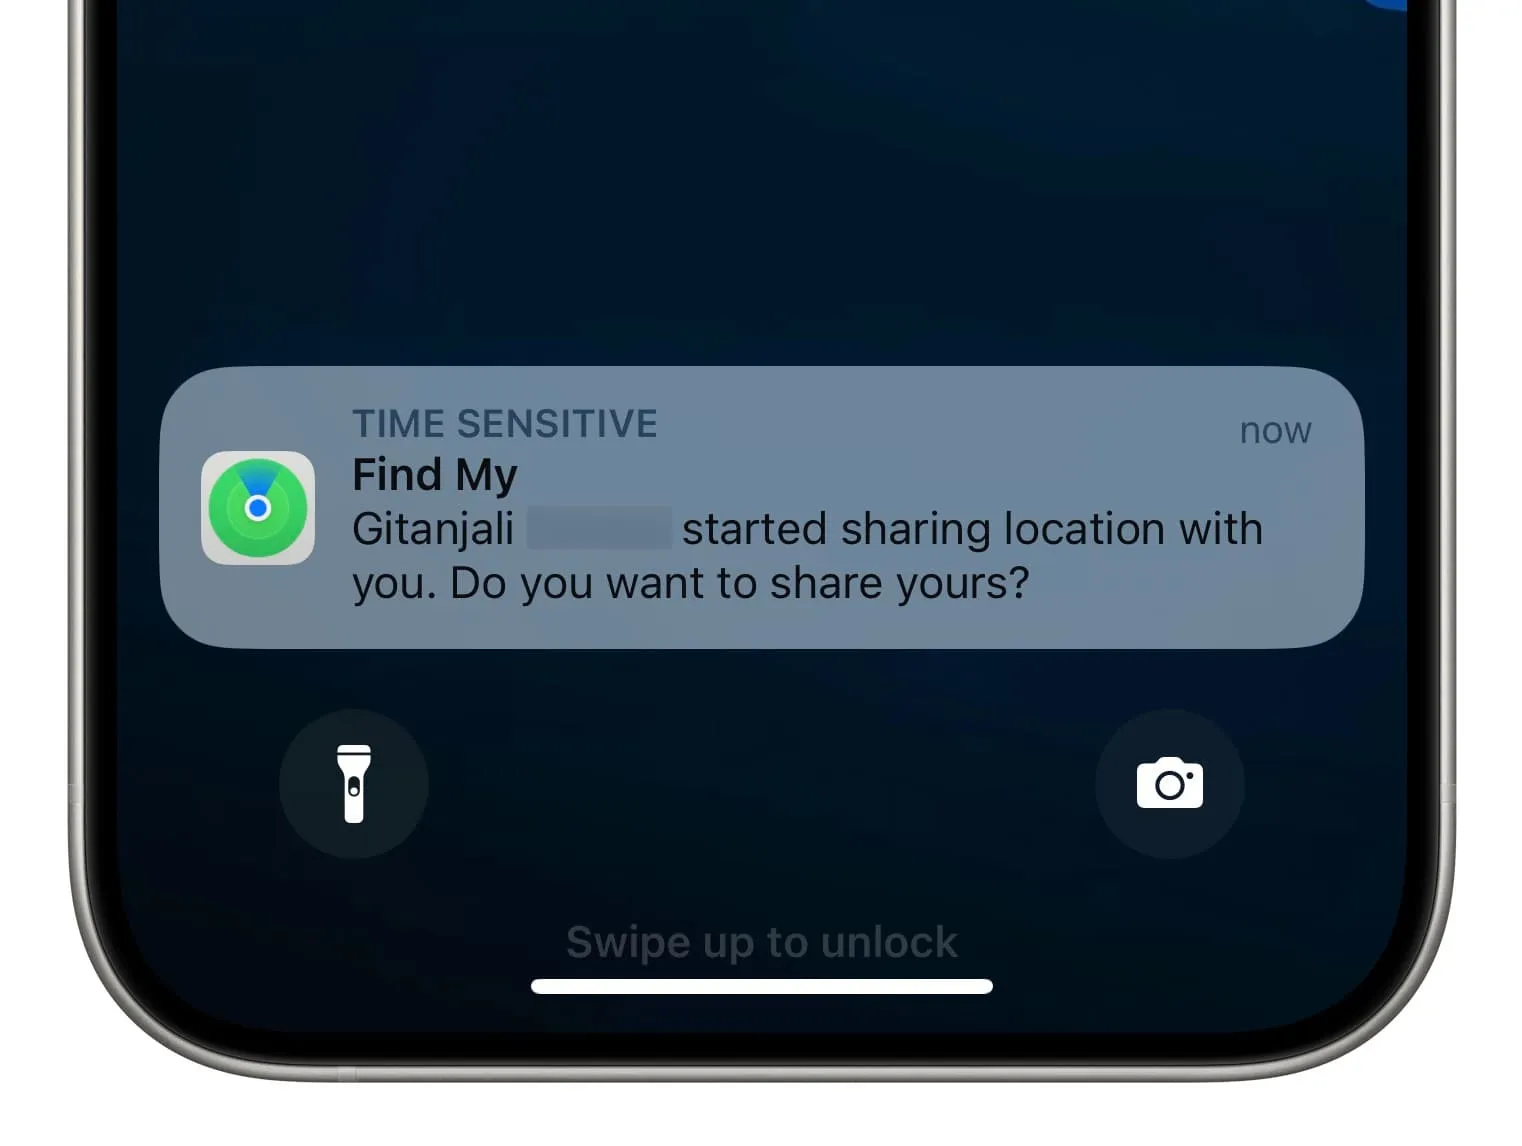 Um membro da família começou a compartilhar o alerta de localização com você no iPhone